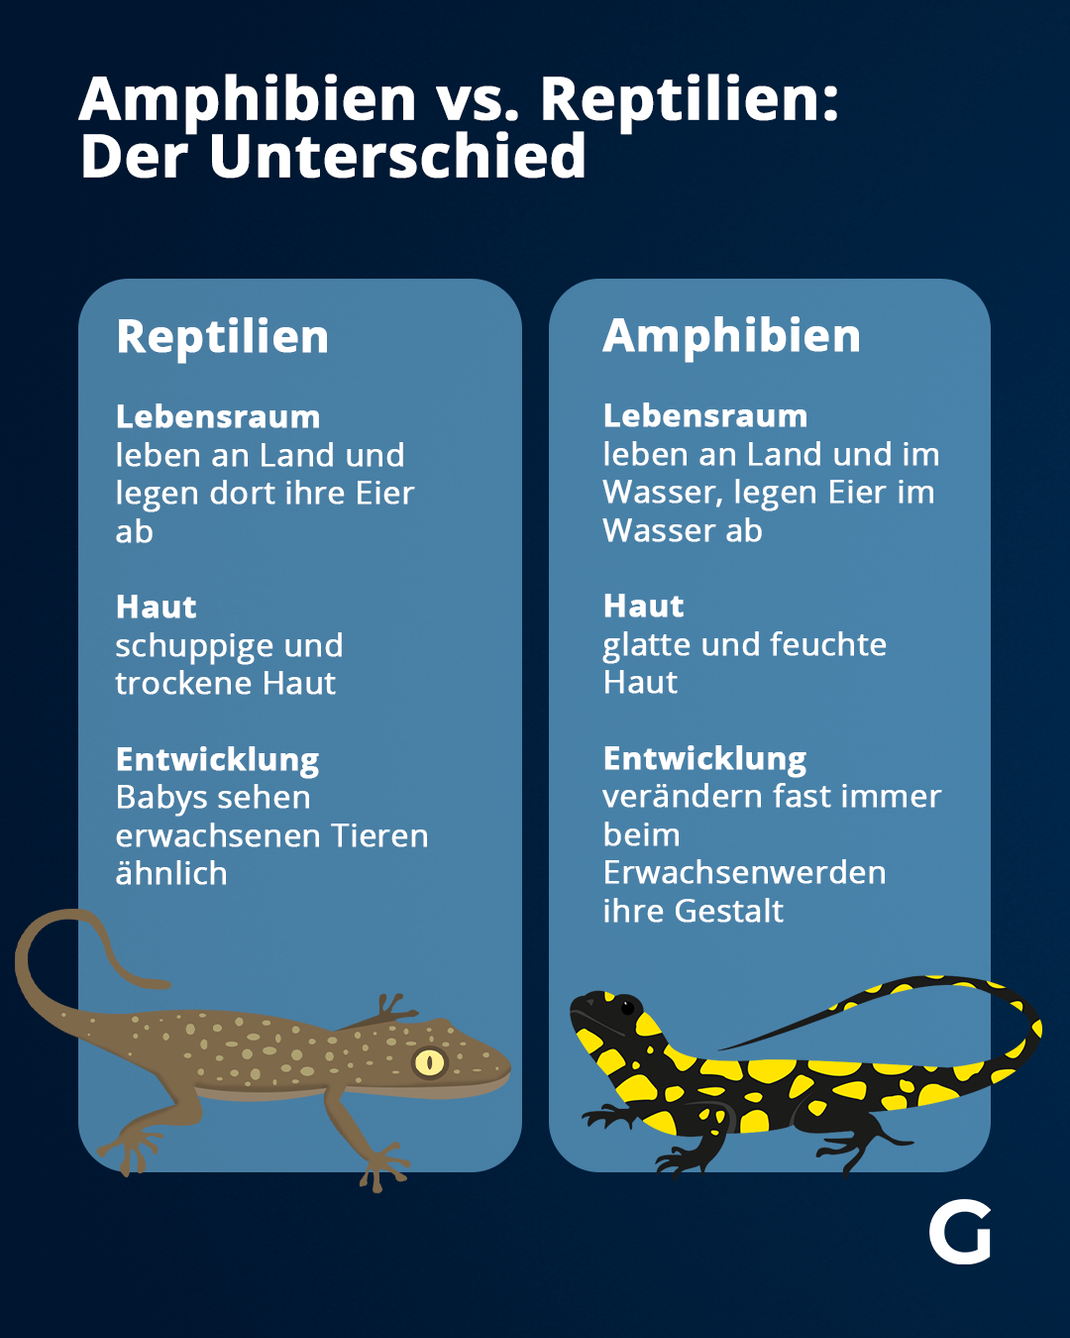 Das sind die Unterschiede zwischen Amphibien und Reptilien.